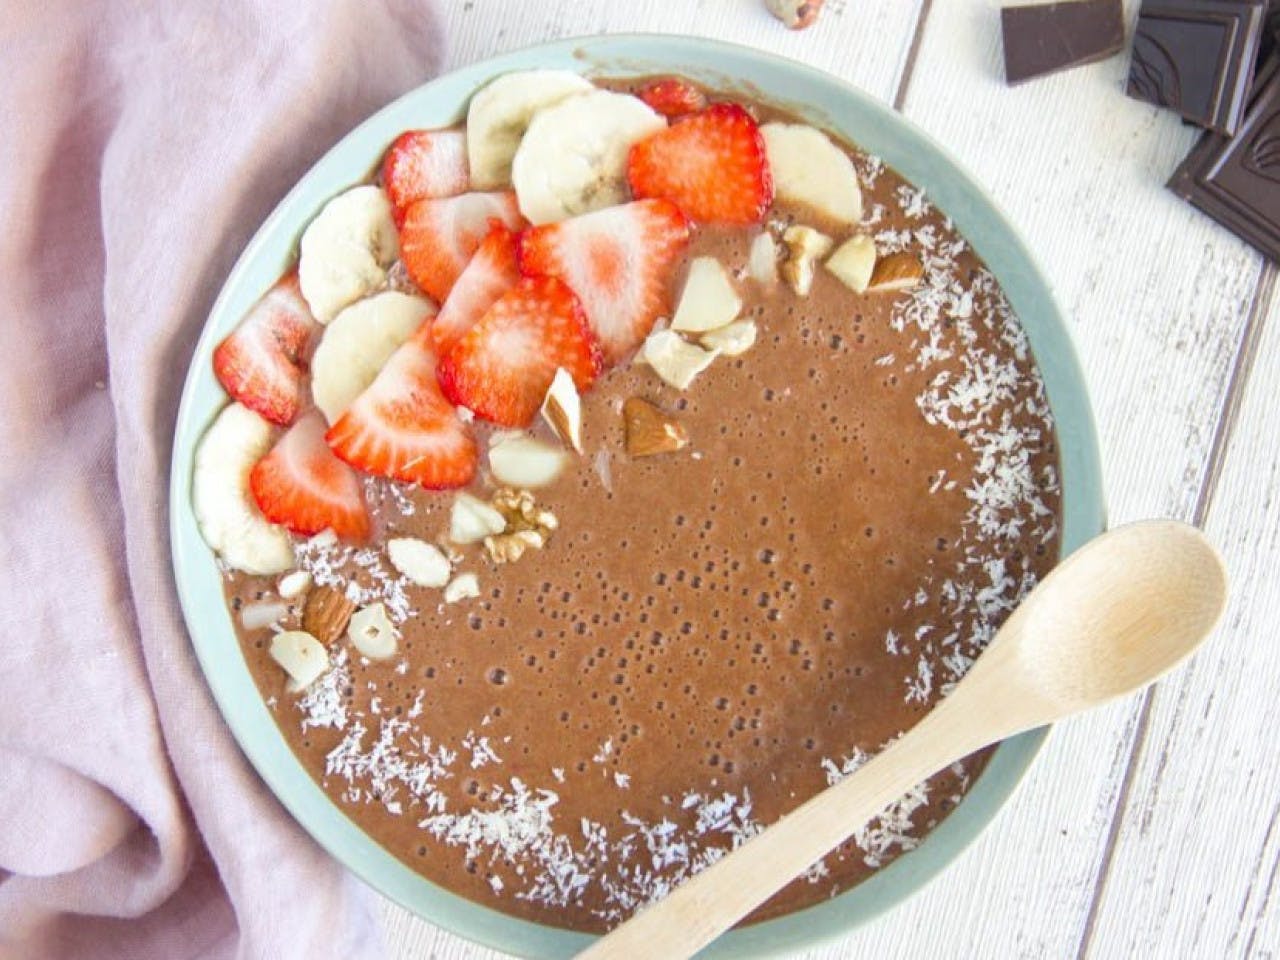 Chocolate smoothie bowl